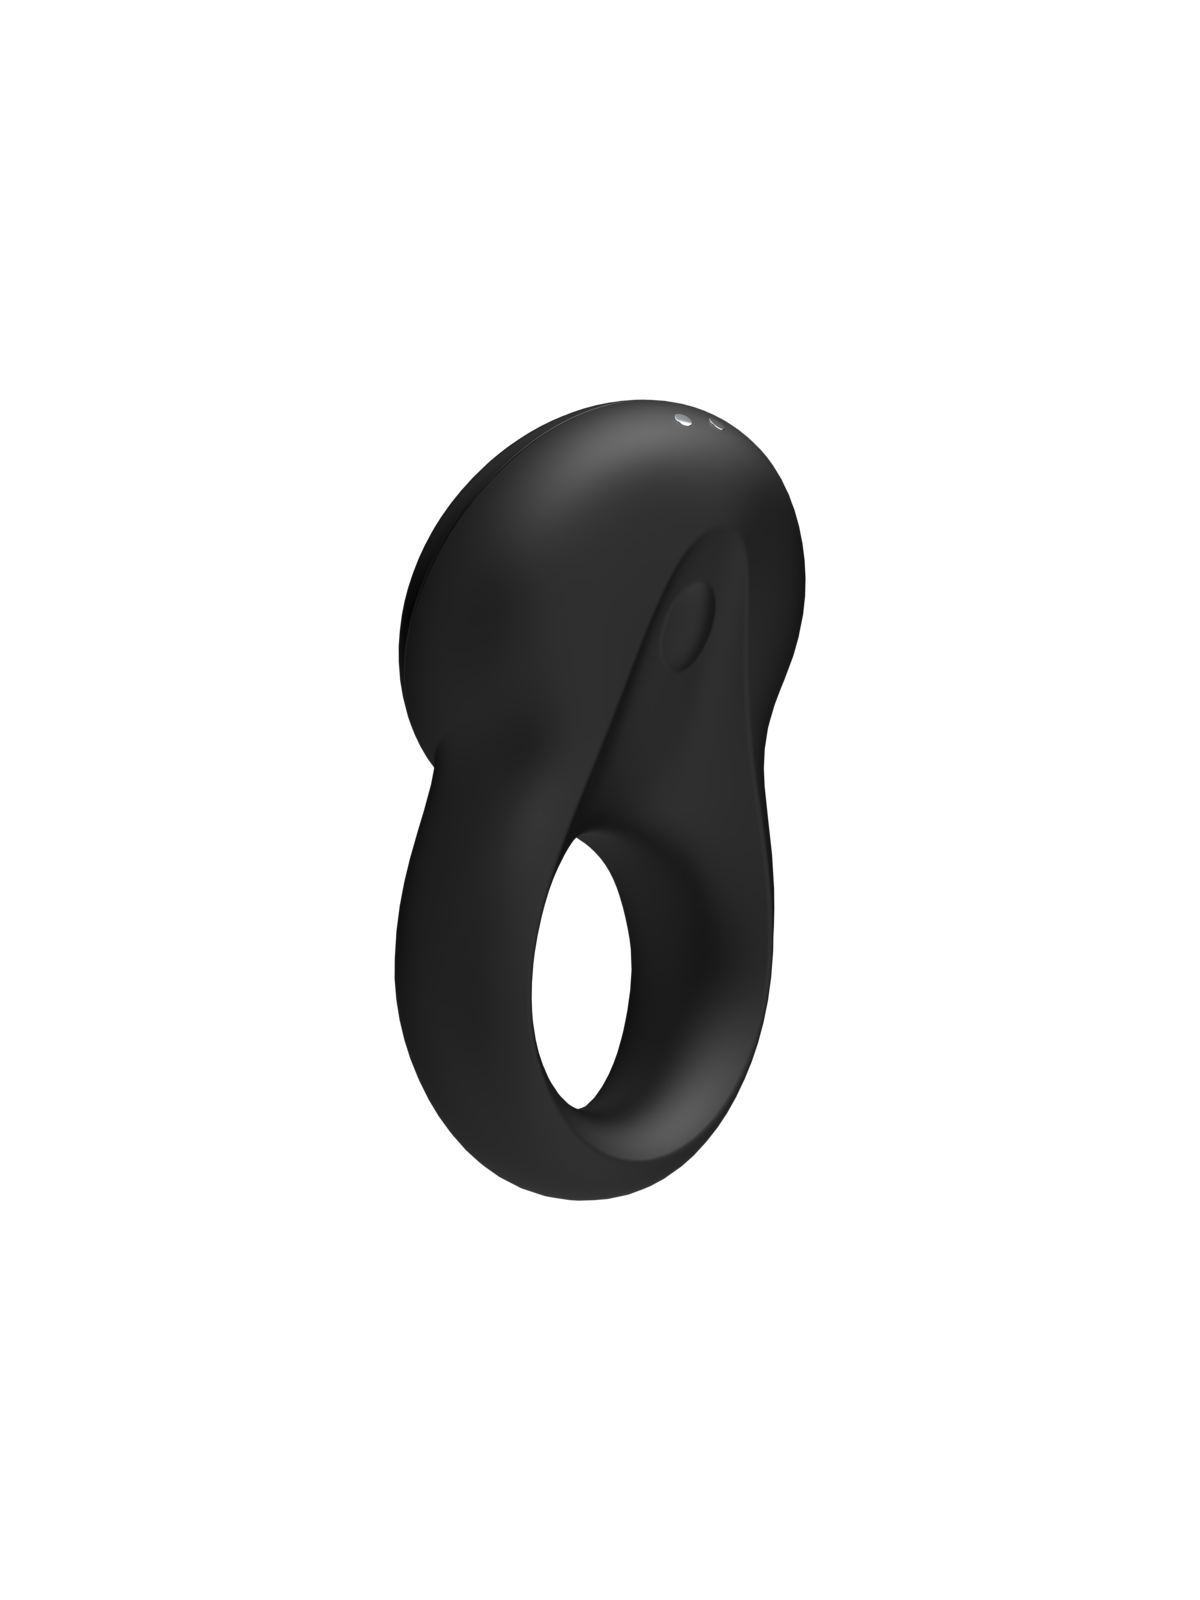 Satisfyer Signet Ring Anillo Estimulador Con App - Comprar Anillo vibrador pene Satisfyer - Anillos vibradores pene (1)